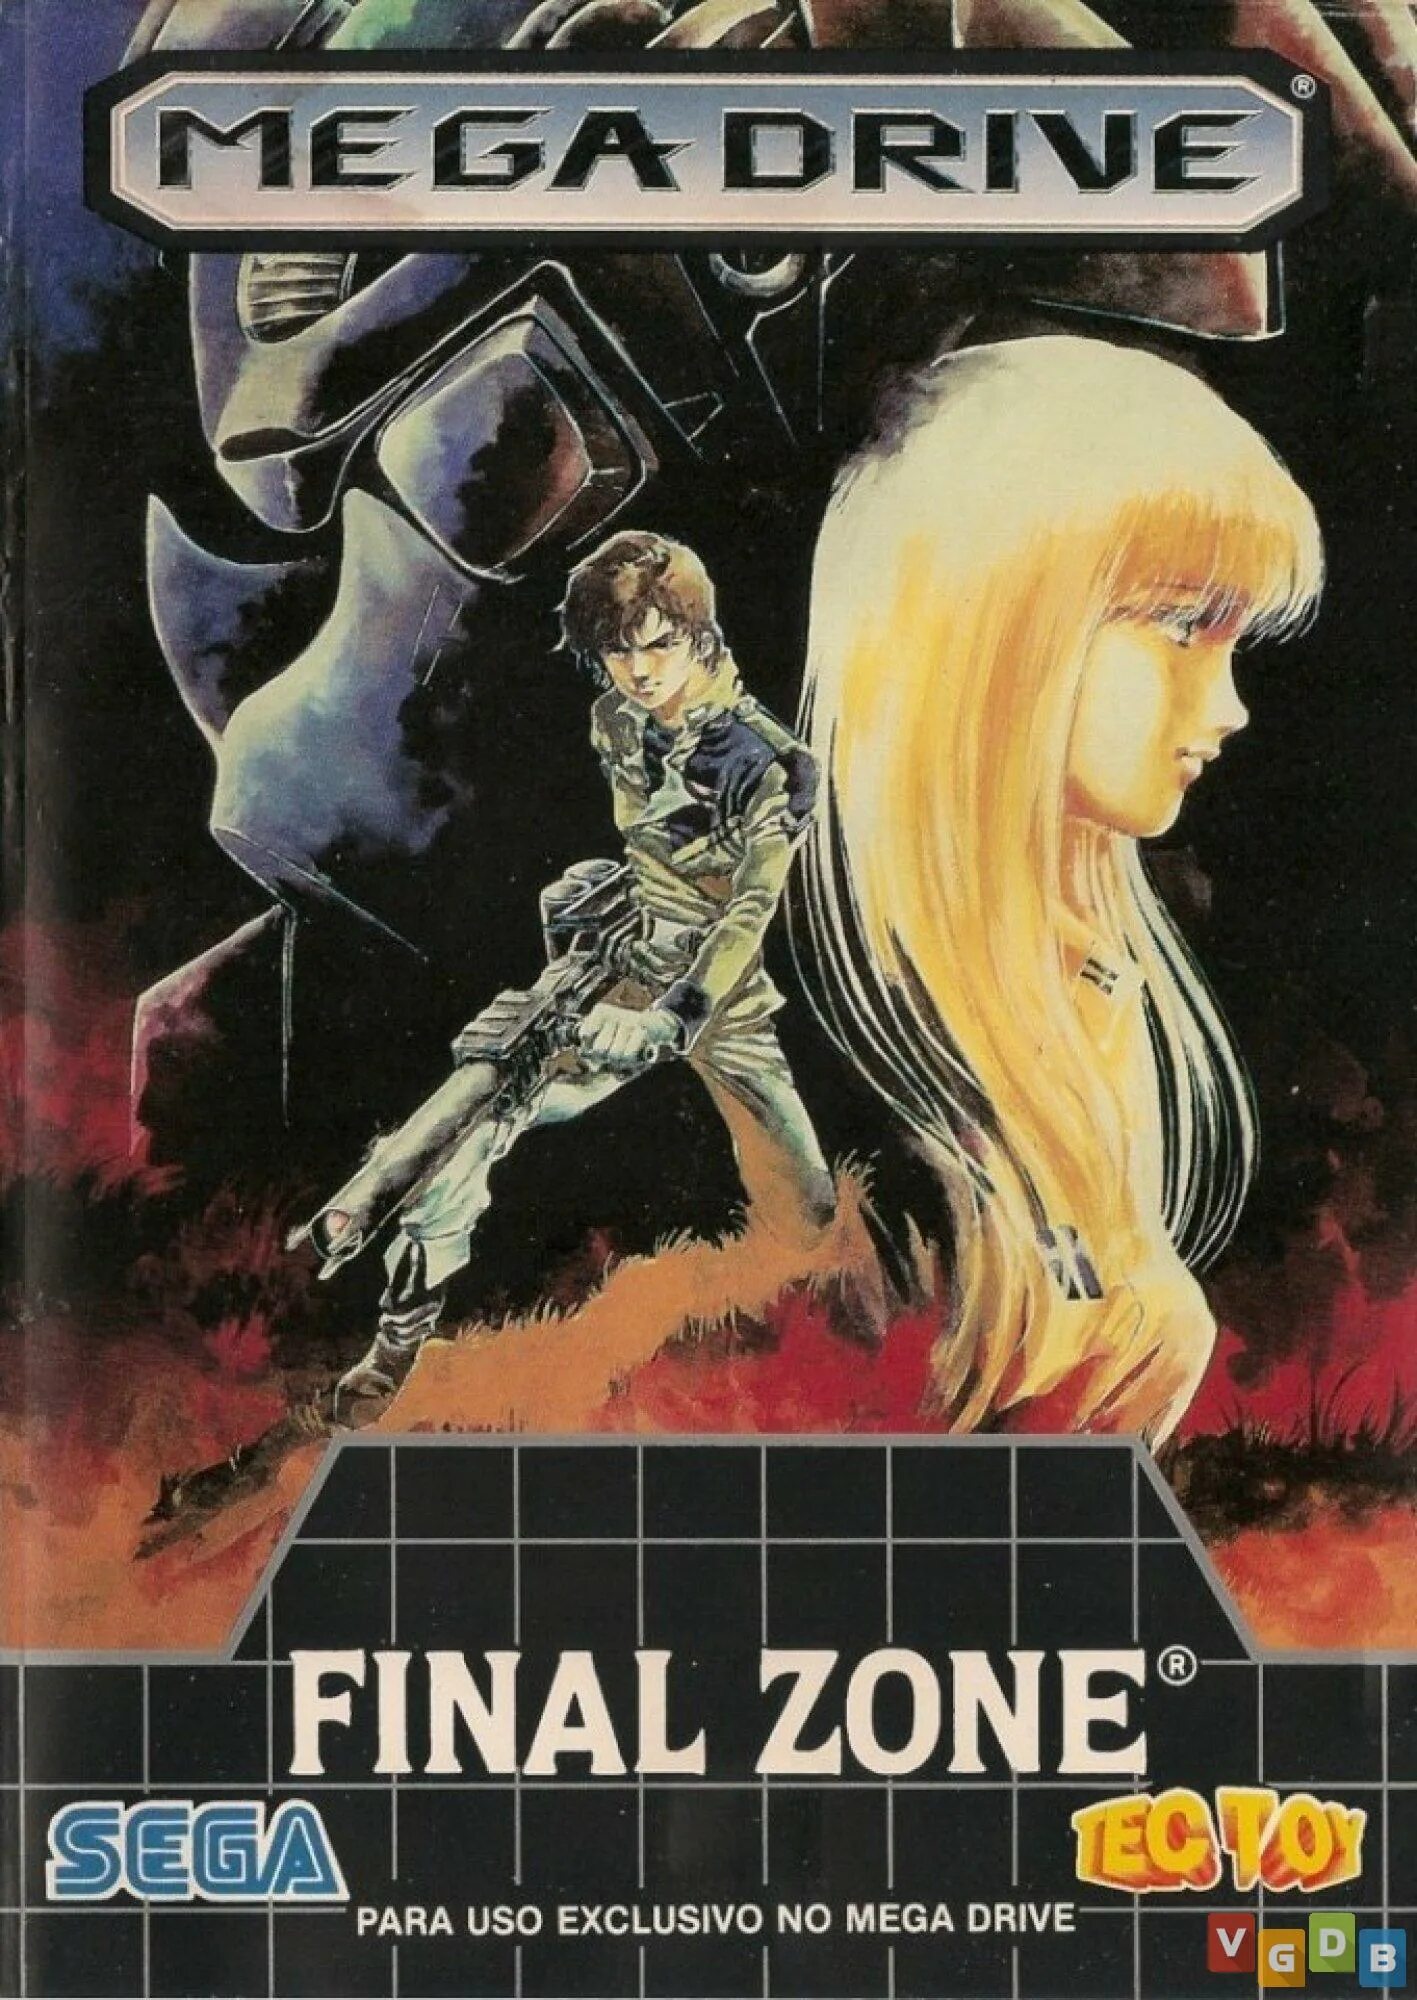 Final Zone. Final Zone Sega. Final Zone (Sega Megadrive). FZ Senki Axis _ Final Zone Sega.